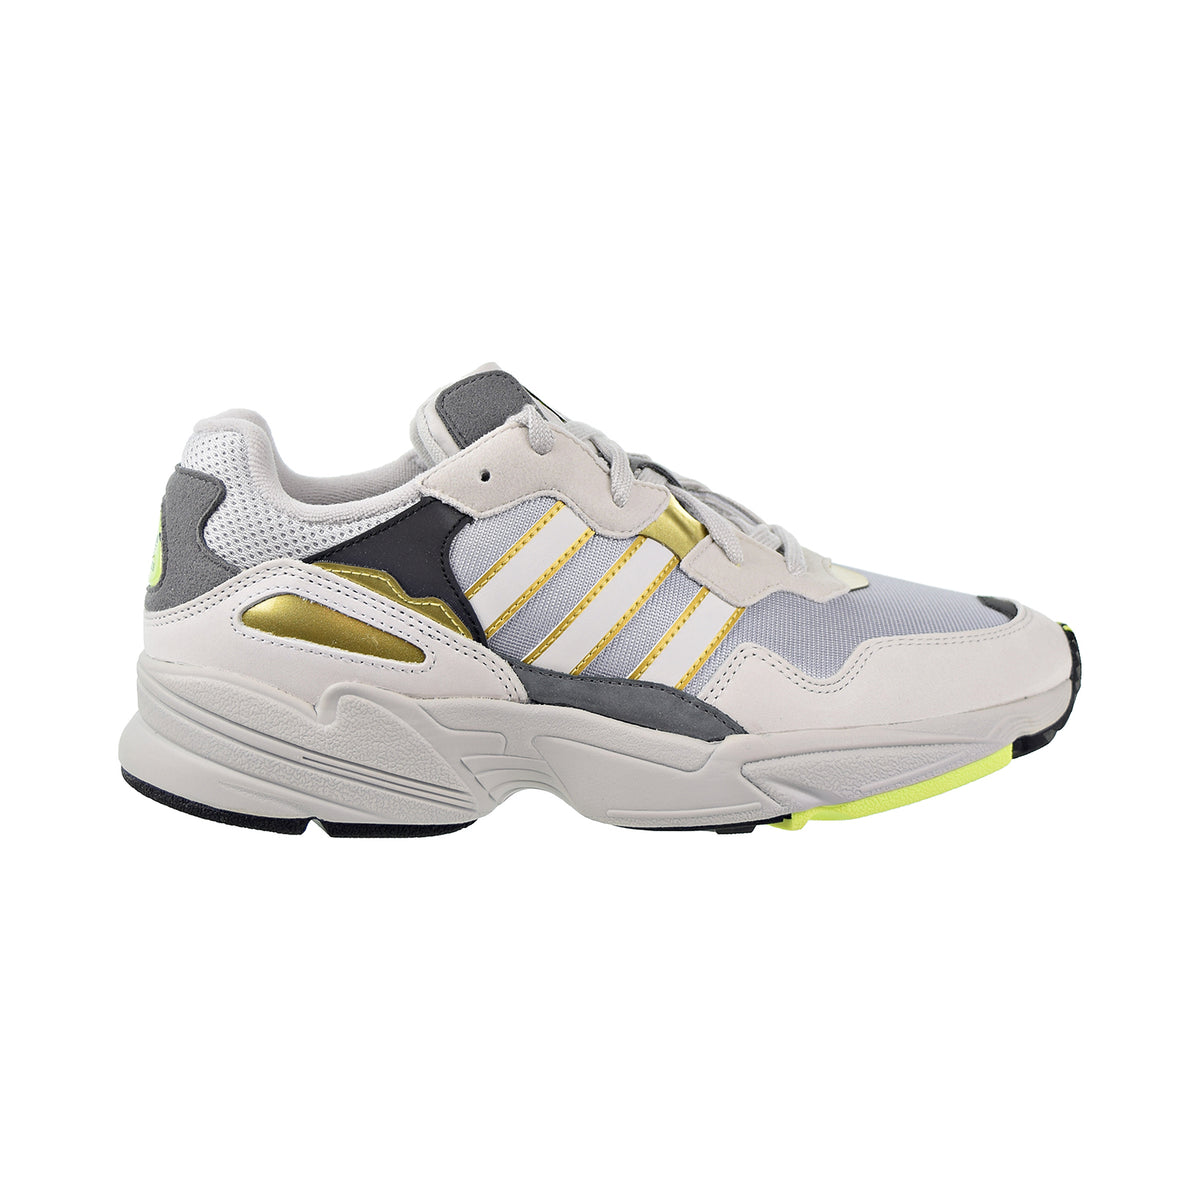 Adidas Yung-96 Mens Shoes Metallic/Grey